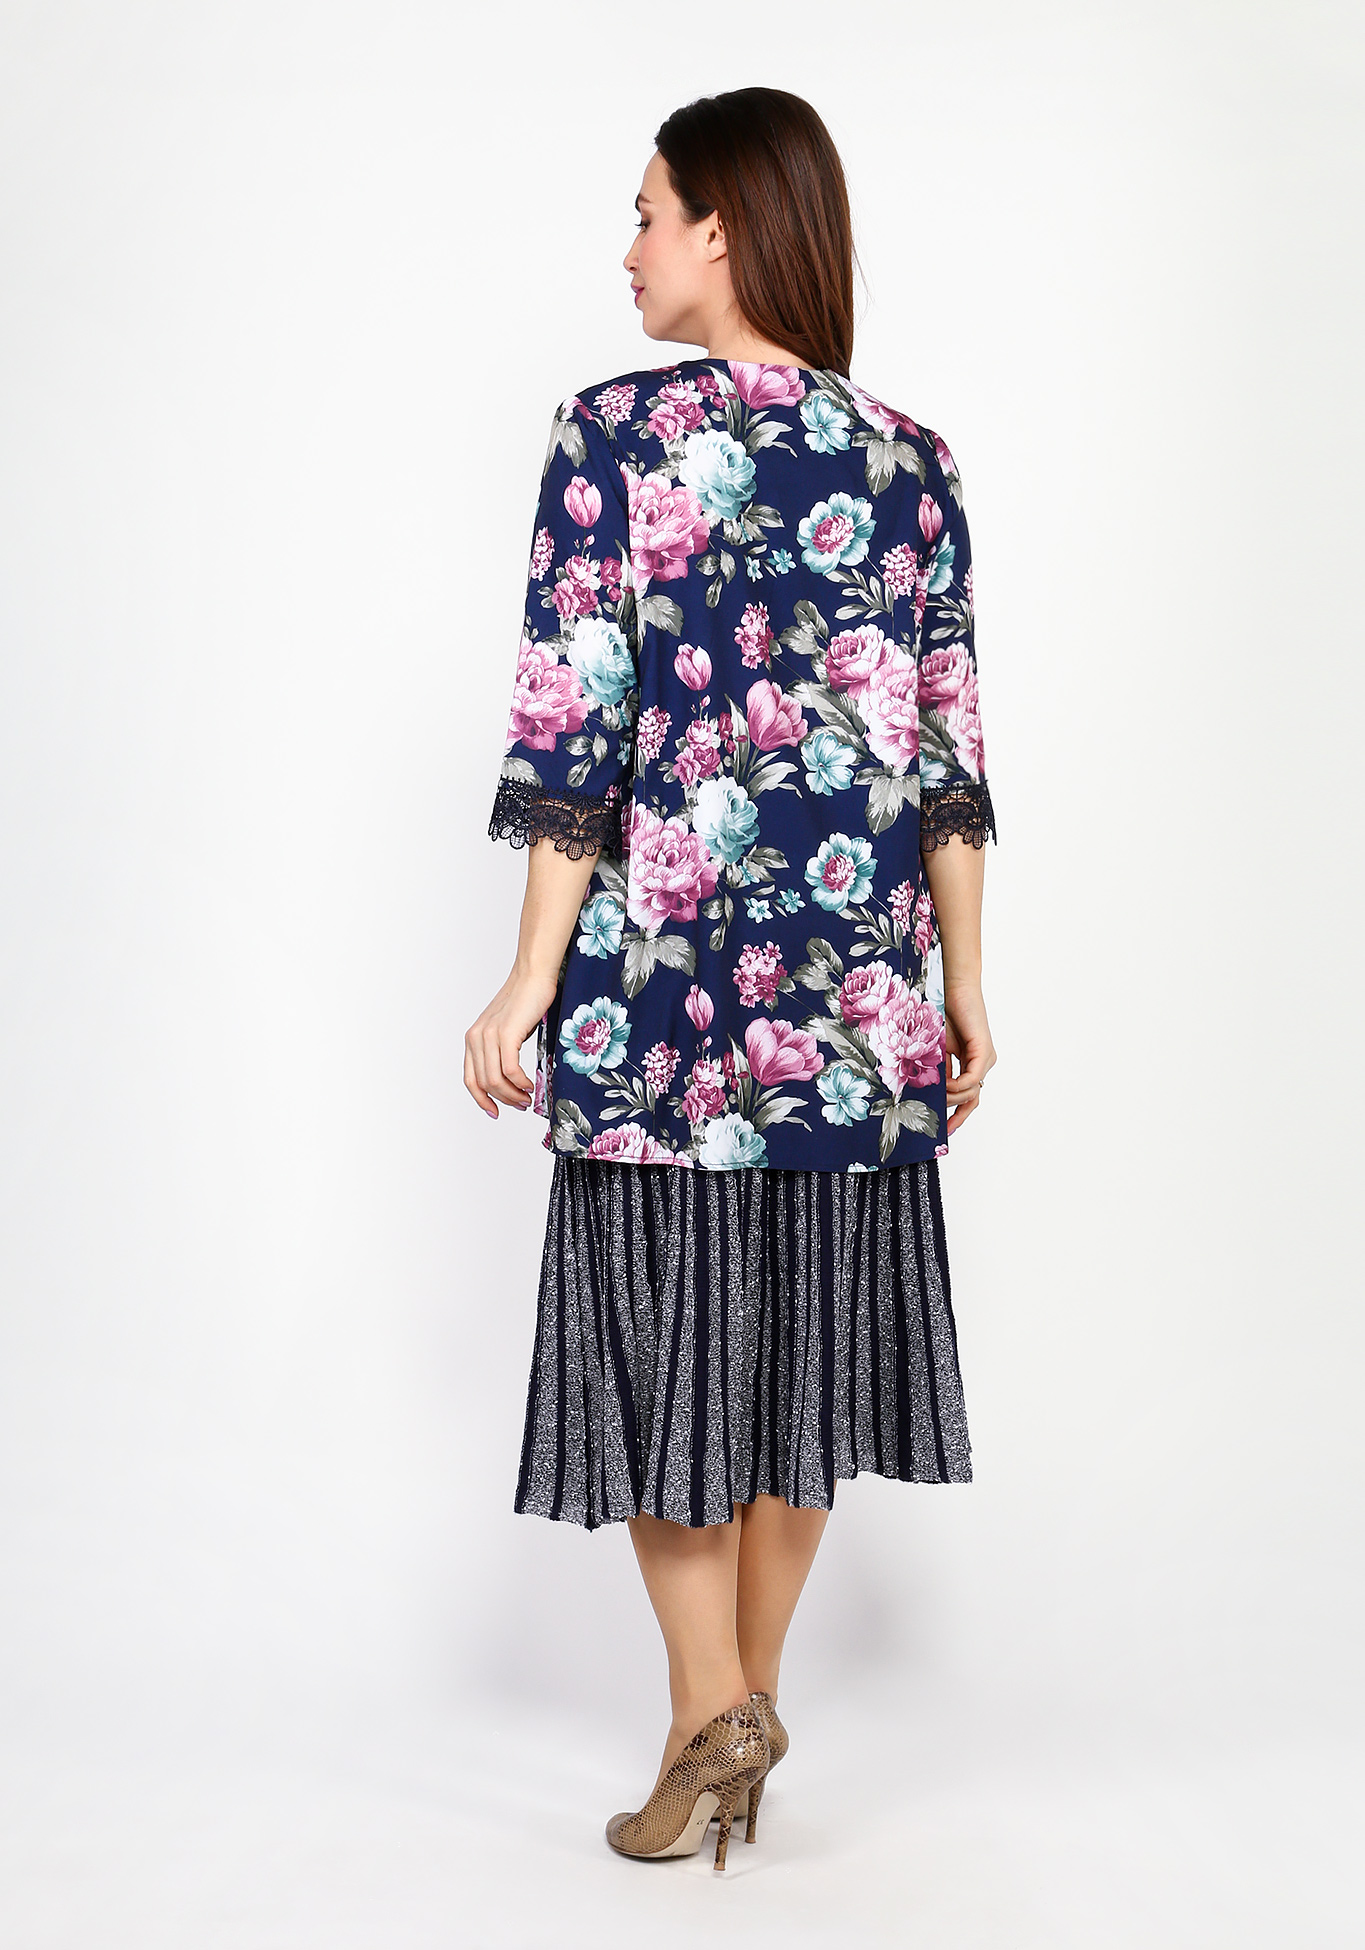 Блуза с цветочным принтом и отделкой кружевом Bianka Modeno, размер 48 - фото 2